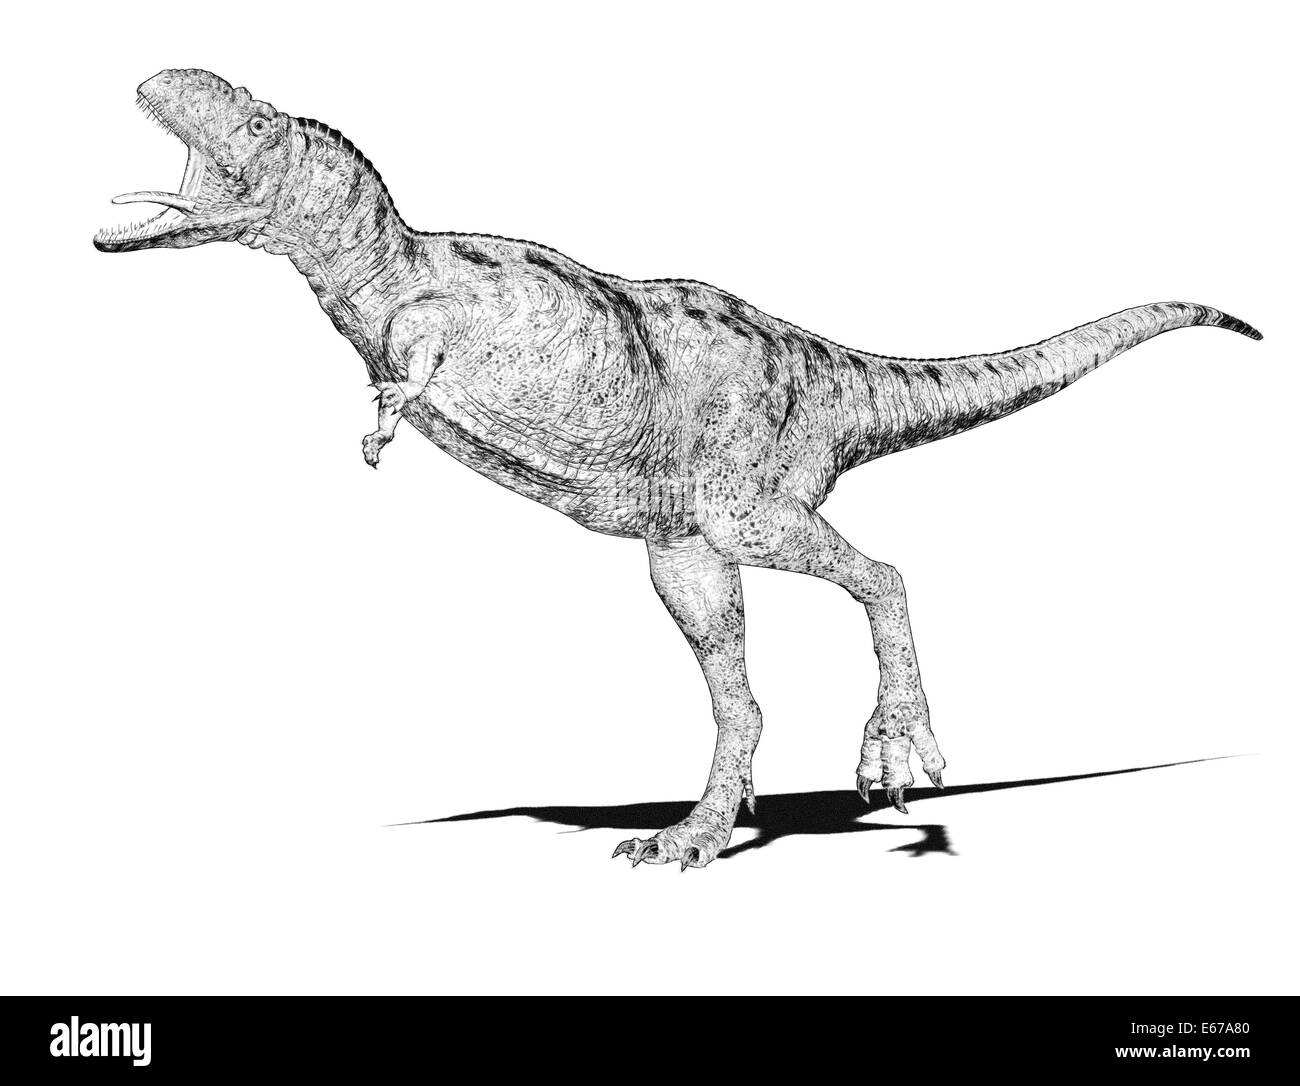 Dinosaurier Aucasaurus / dinosaur Aucasaurus Stock Photo